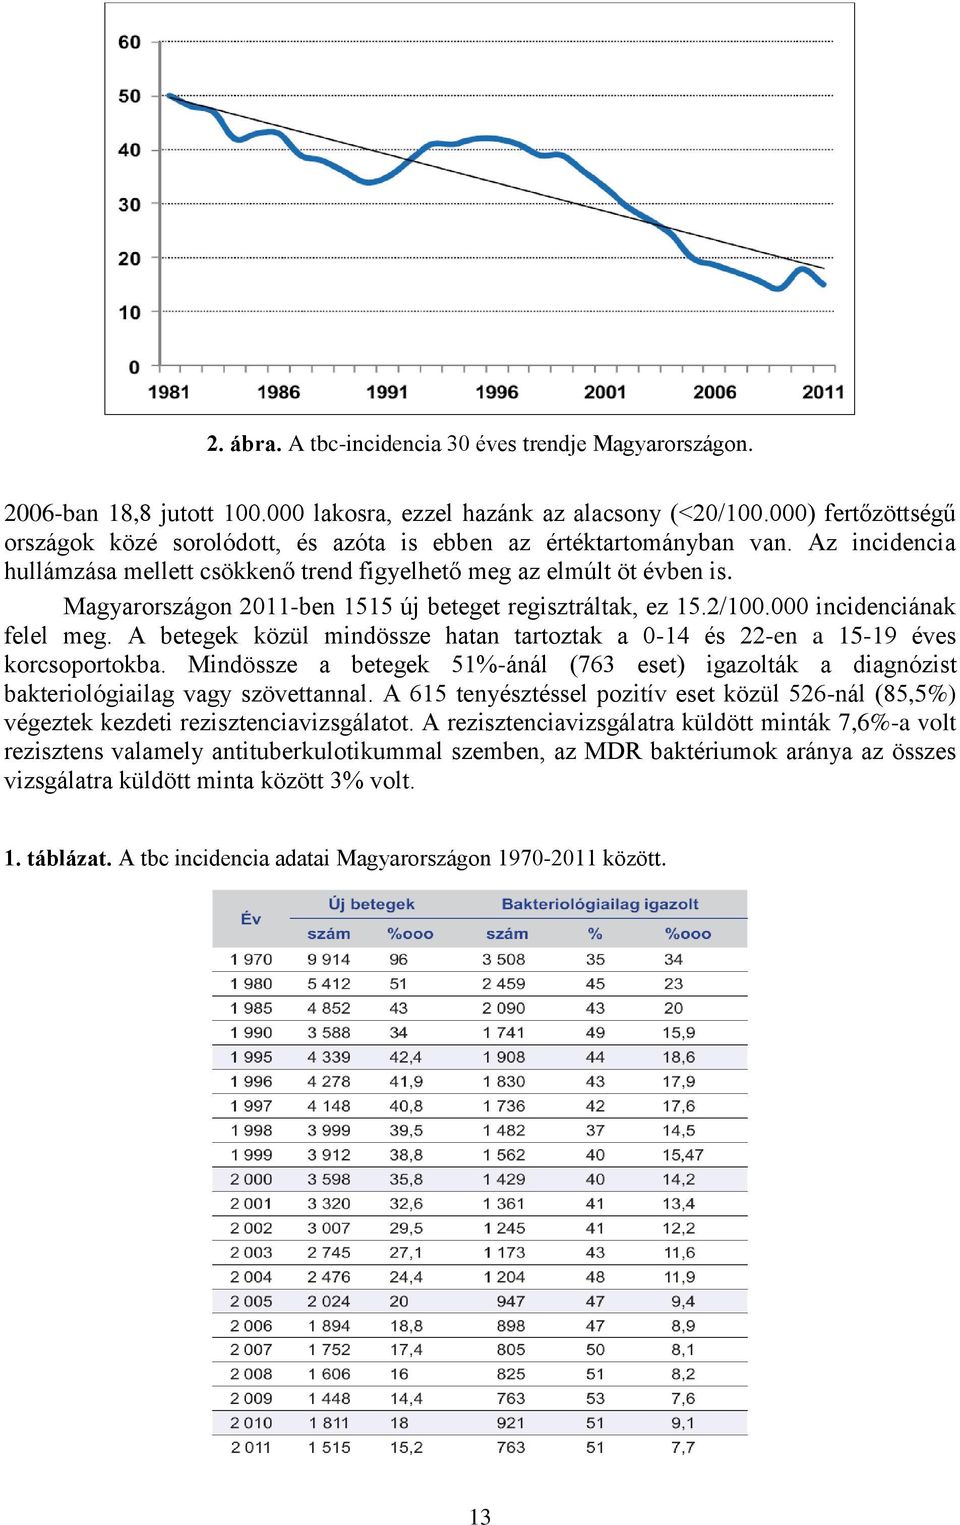 Magyarországon 2011-ben 1515 új beteget regisztráltak, ez 15.2/100.000 incidenciának felel meg. A betegek közül mindössze hatan tartoztak a 0-14 és 22-en a 15-19 éves korcsoportokba.